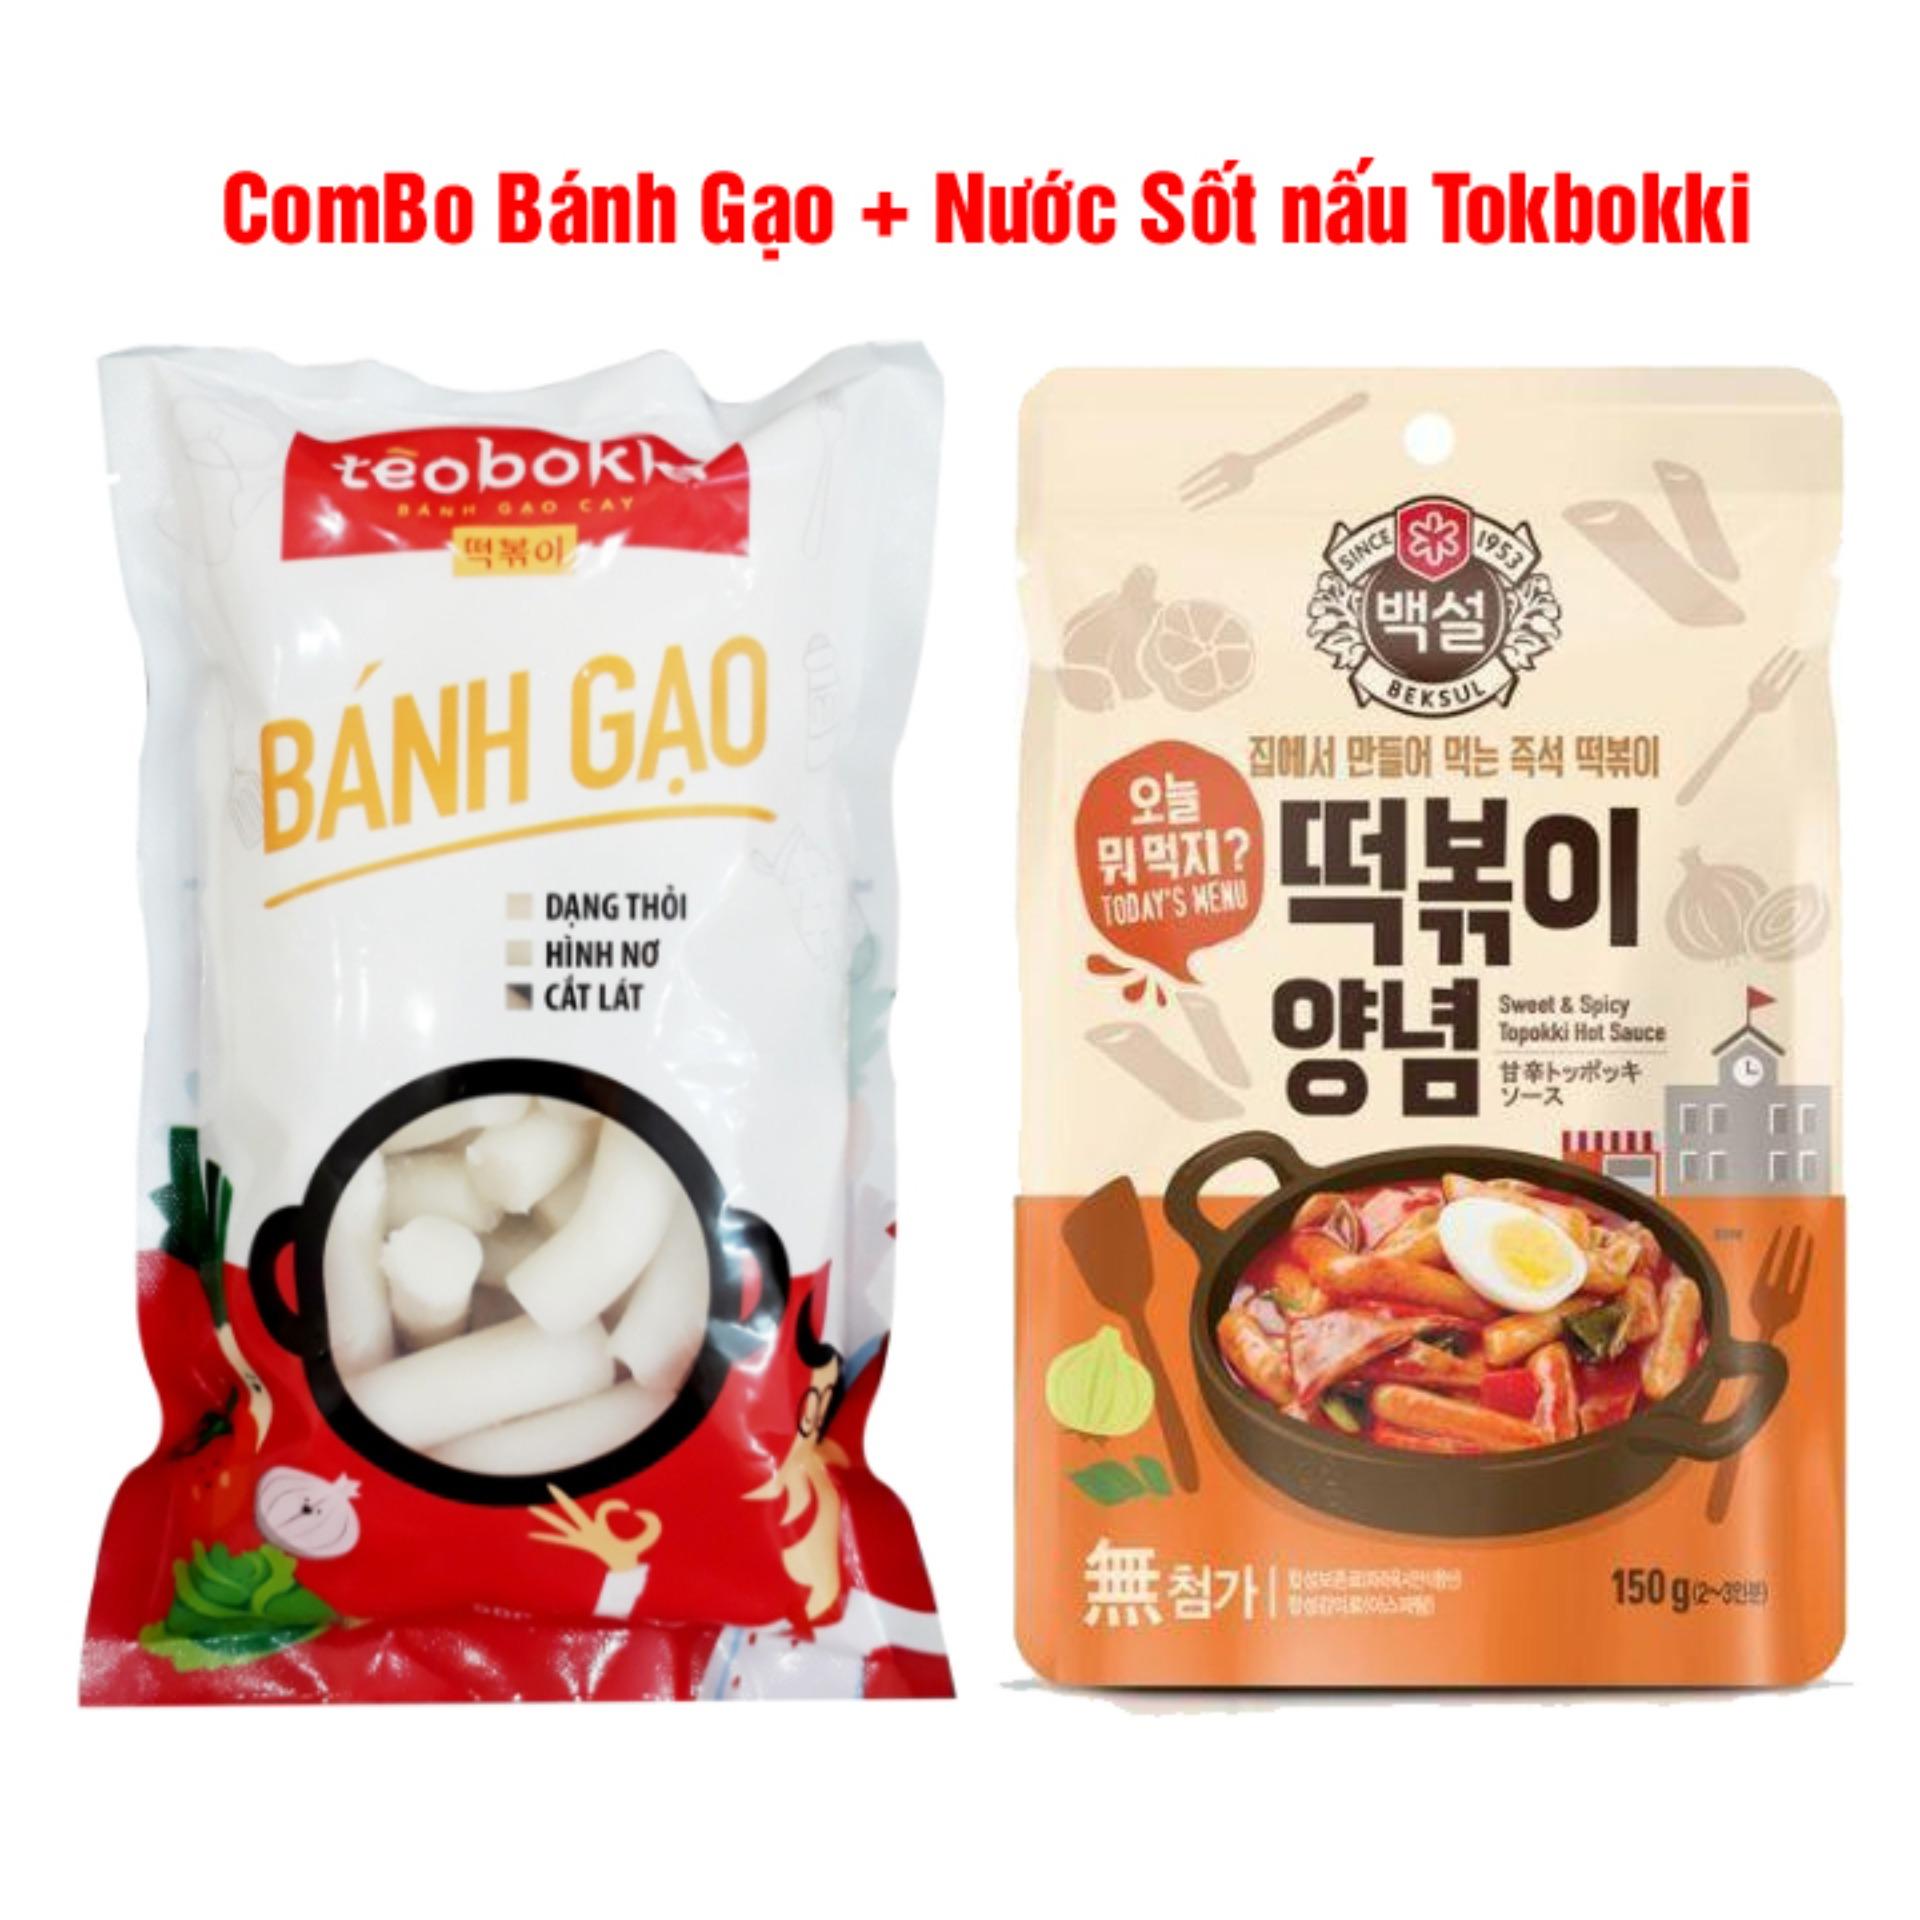 Combo Bánh Gạo Cay + Nước sốt Tokbokki Hàn Quốc